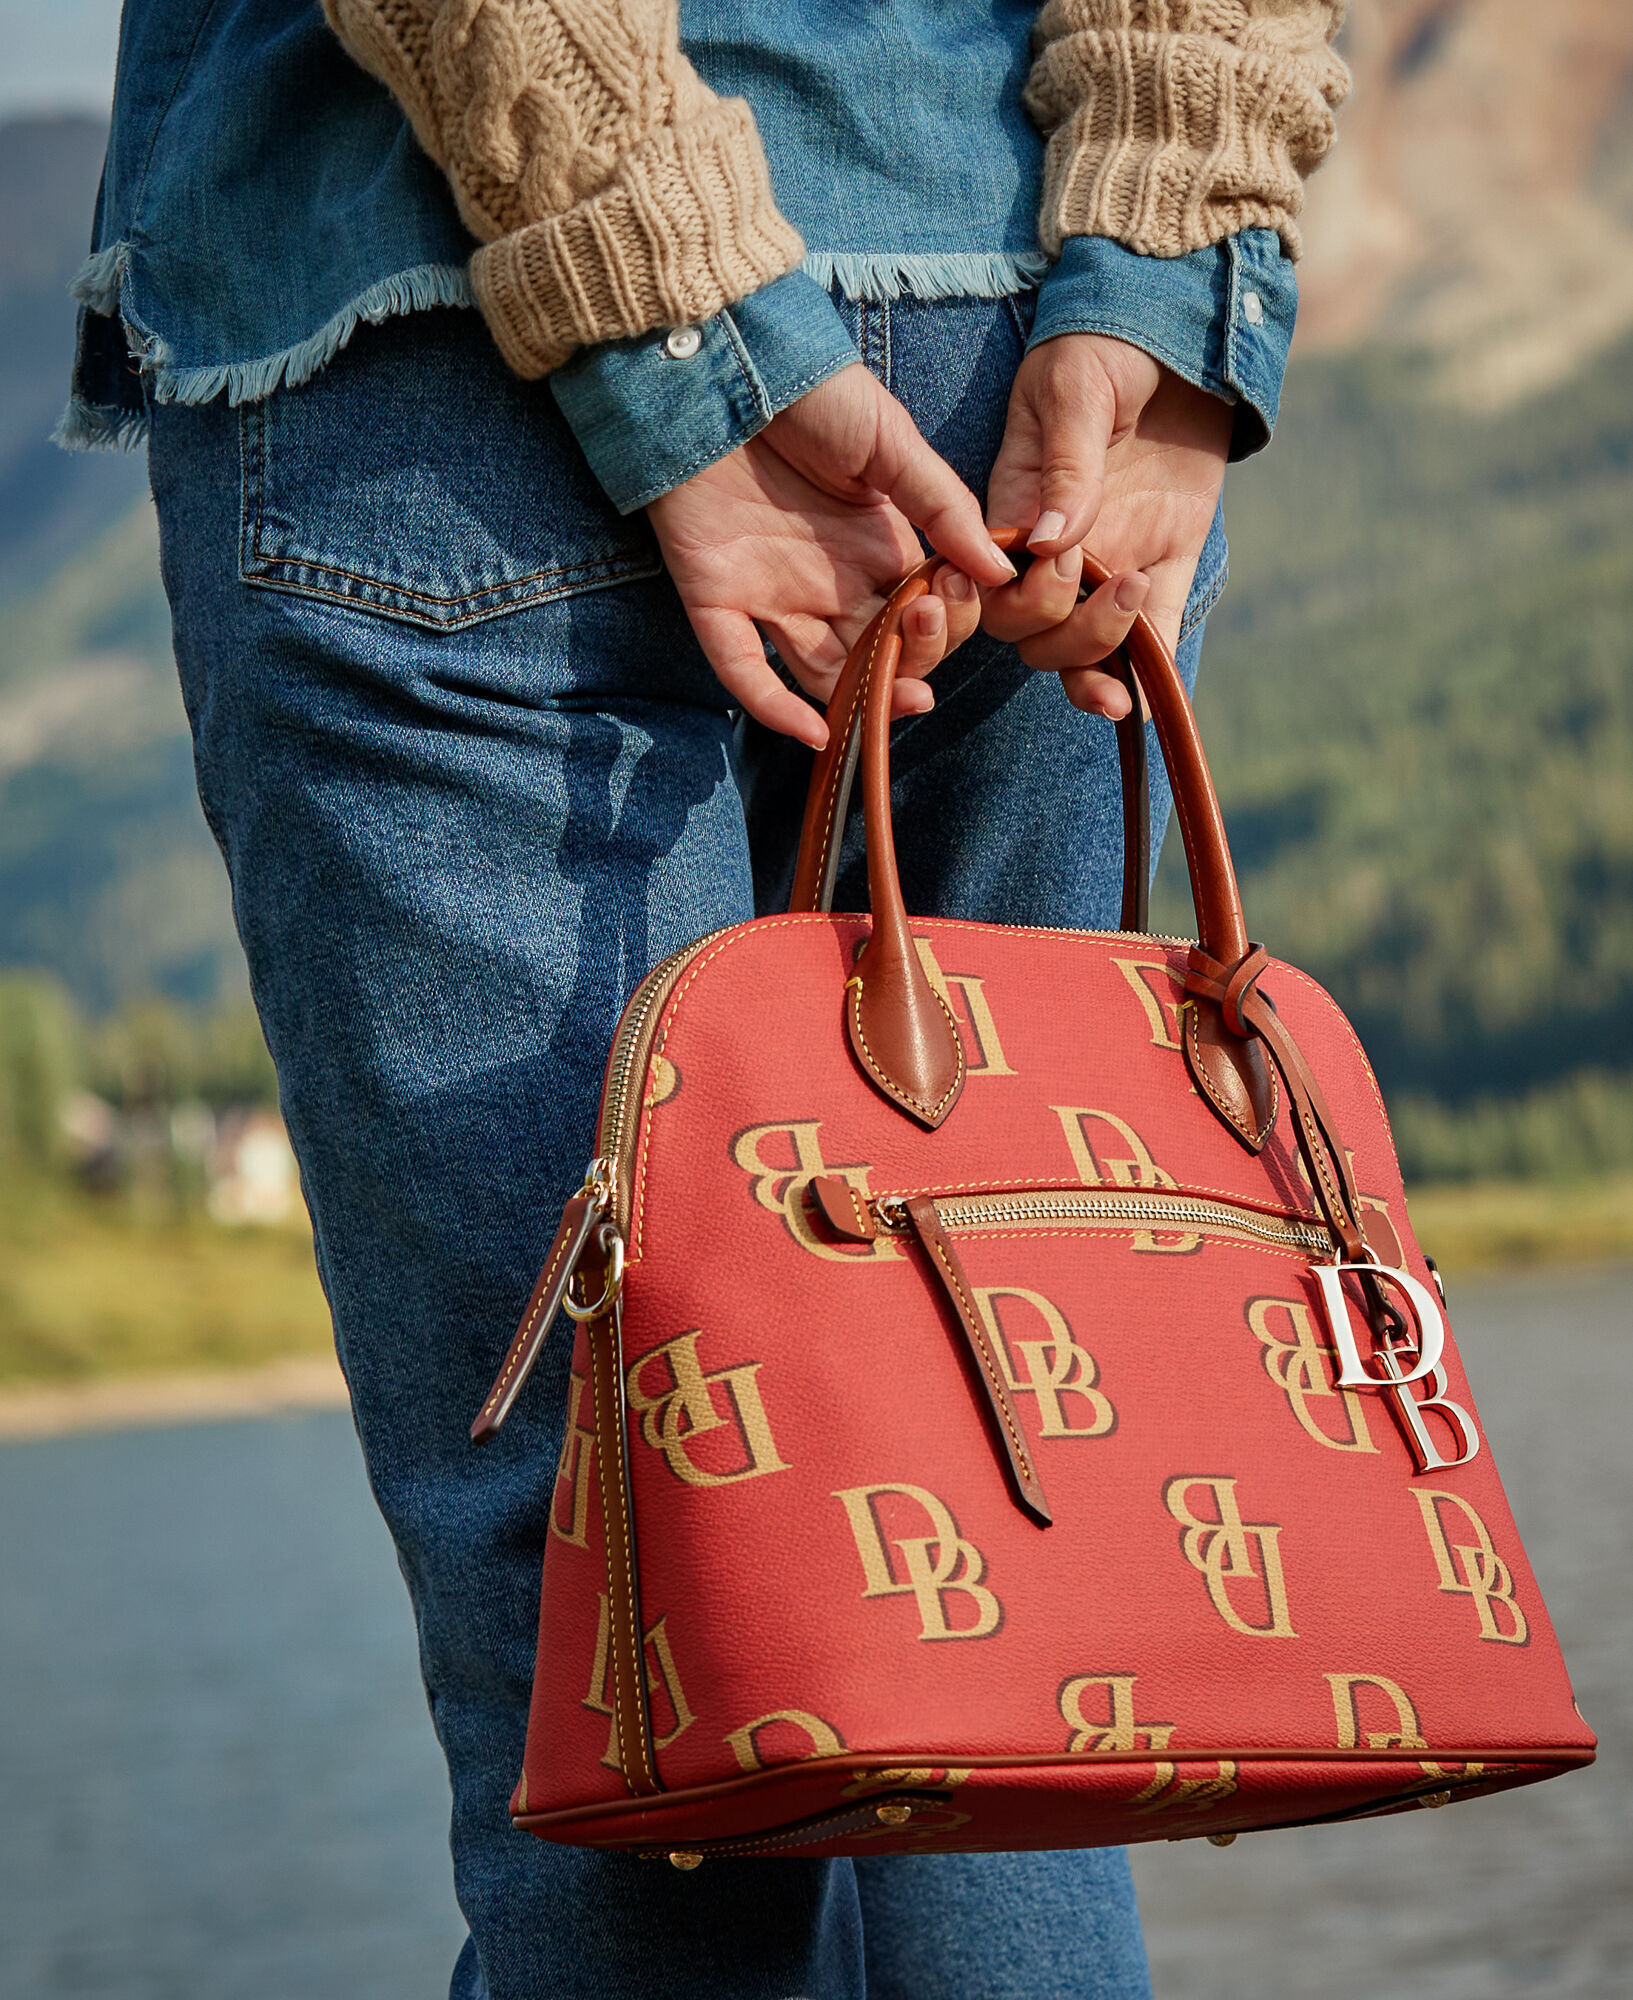 Handbag Designer By Dooney And Bourke Size: Large